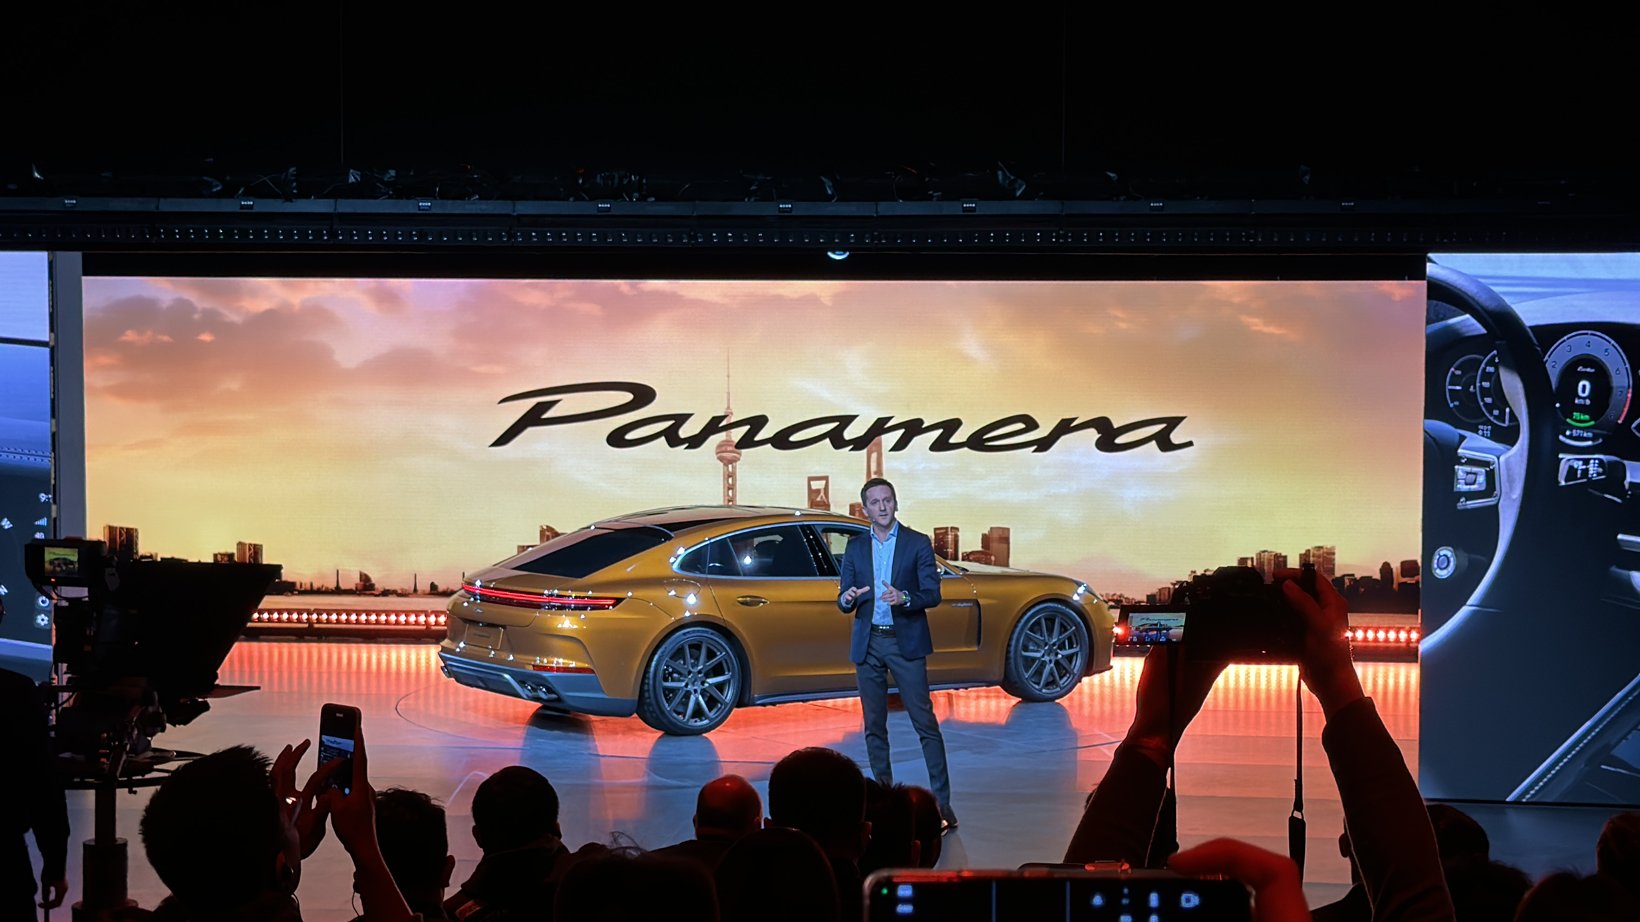 运动豪华轿车再换代 全新Panamera全球首秀并启动预售